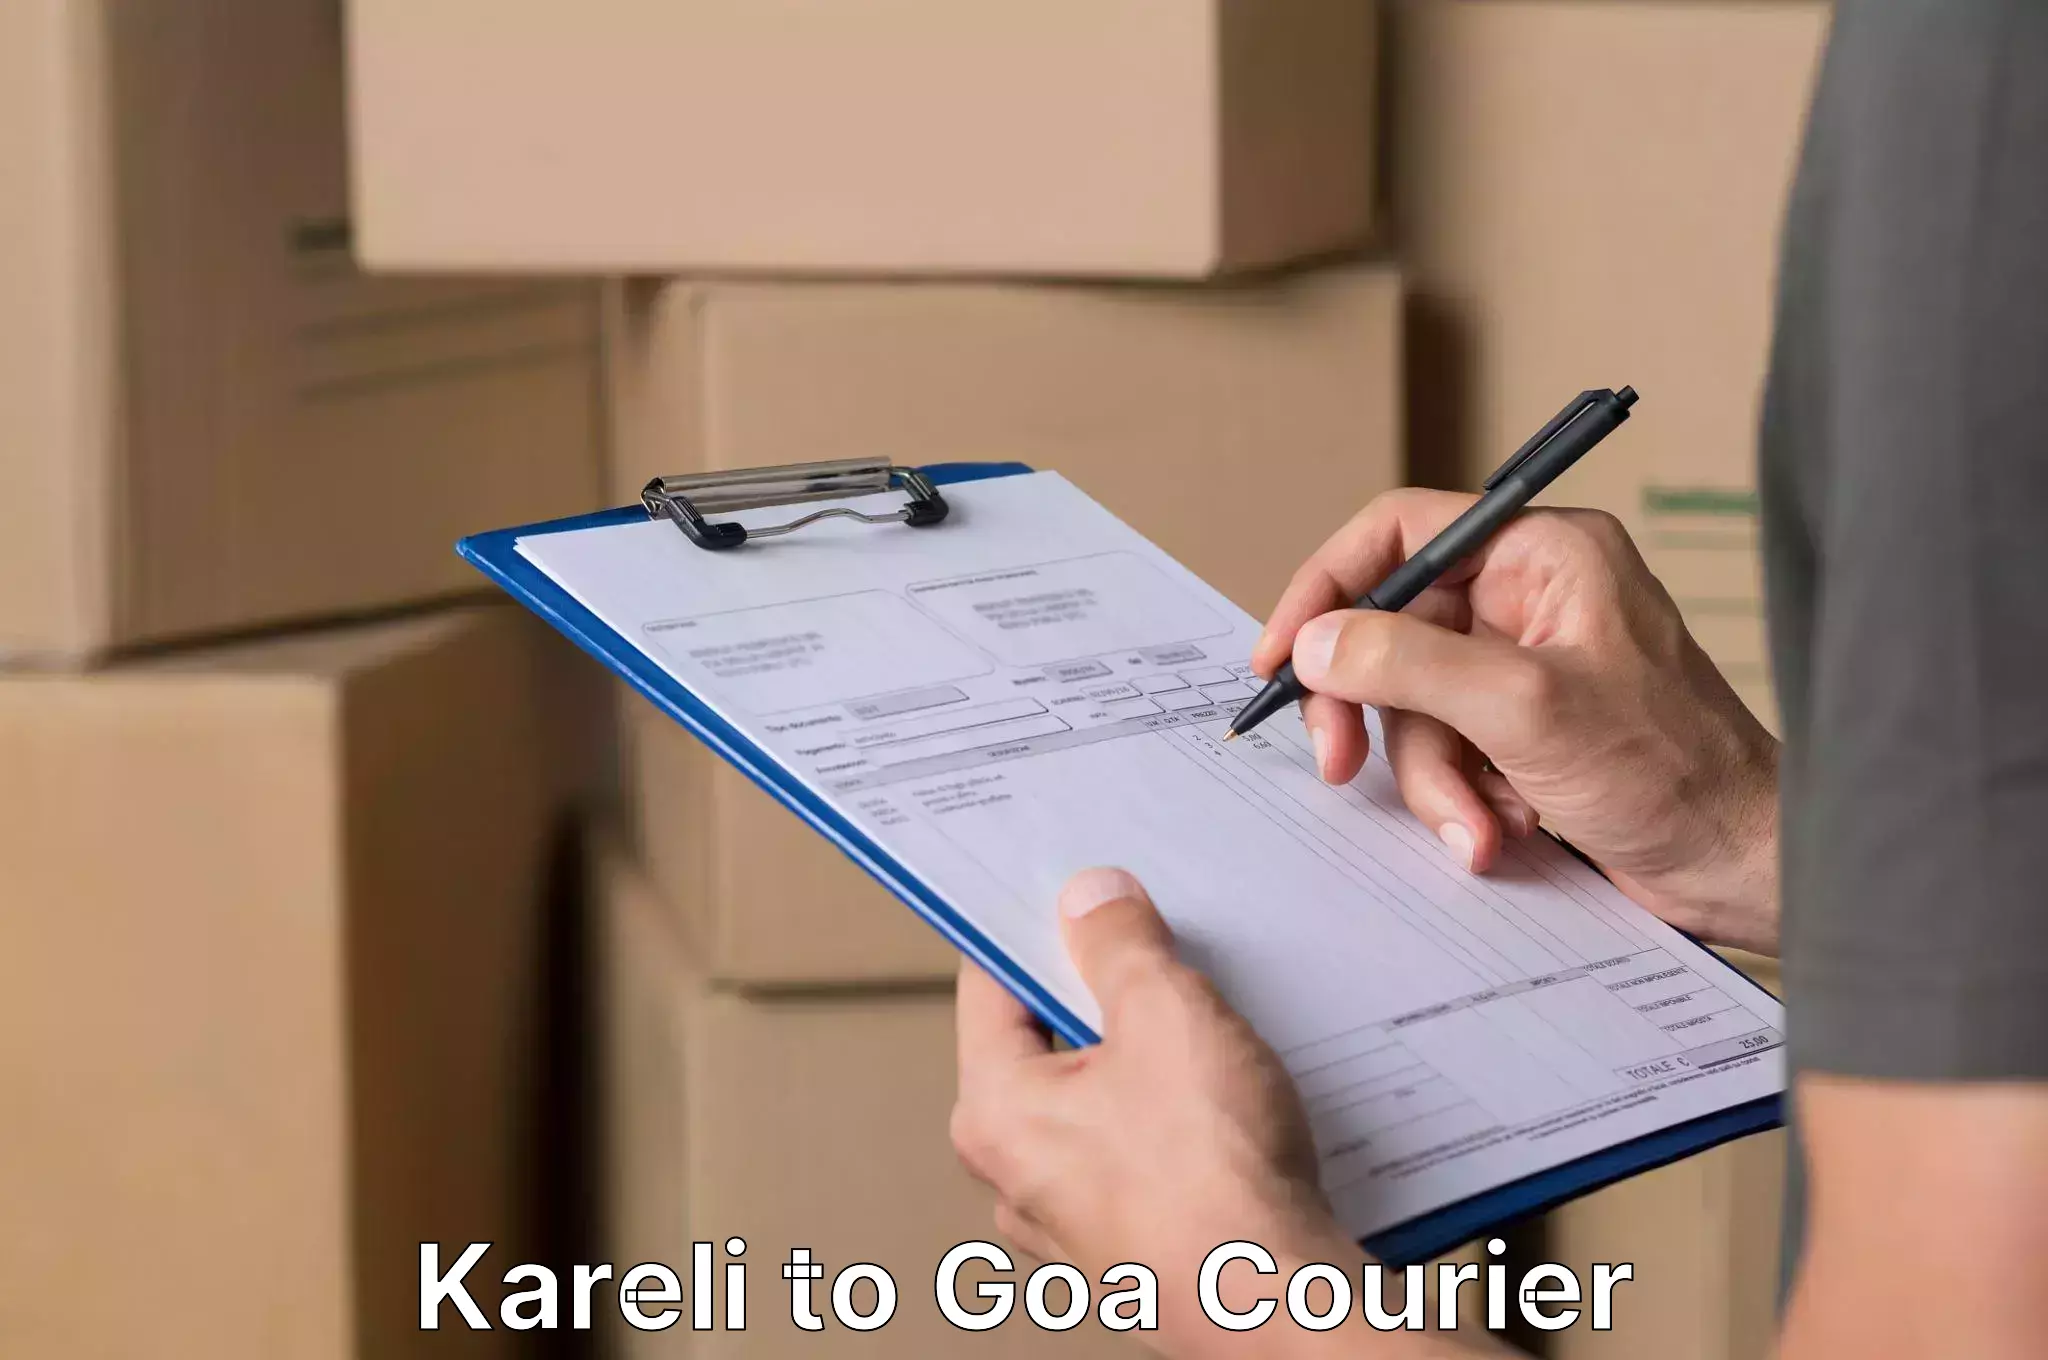 Professional home movers Kareli to Goa